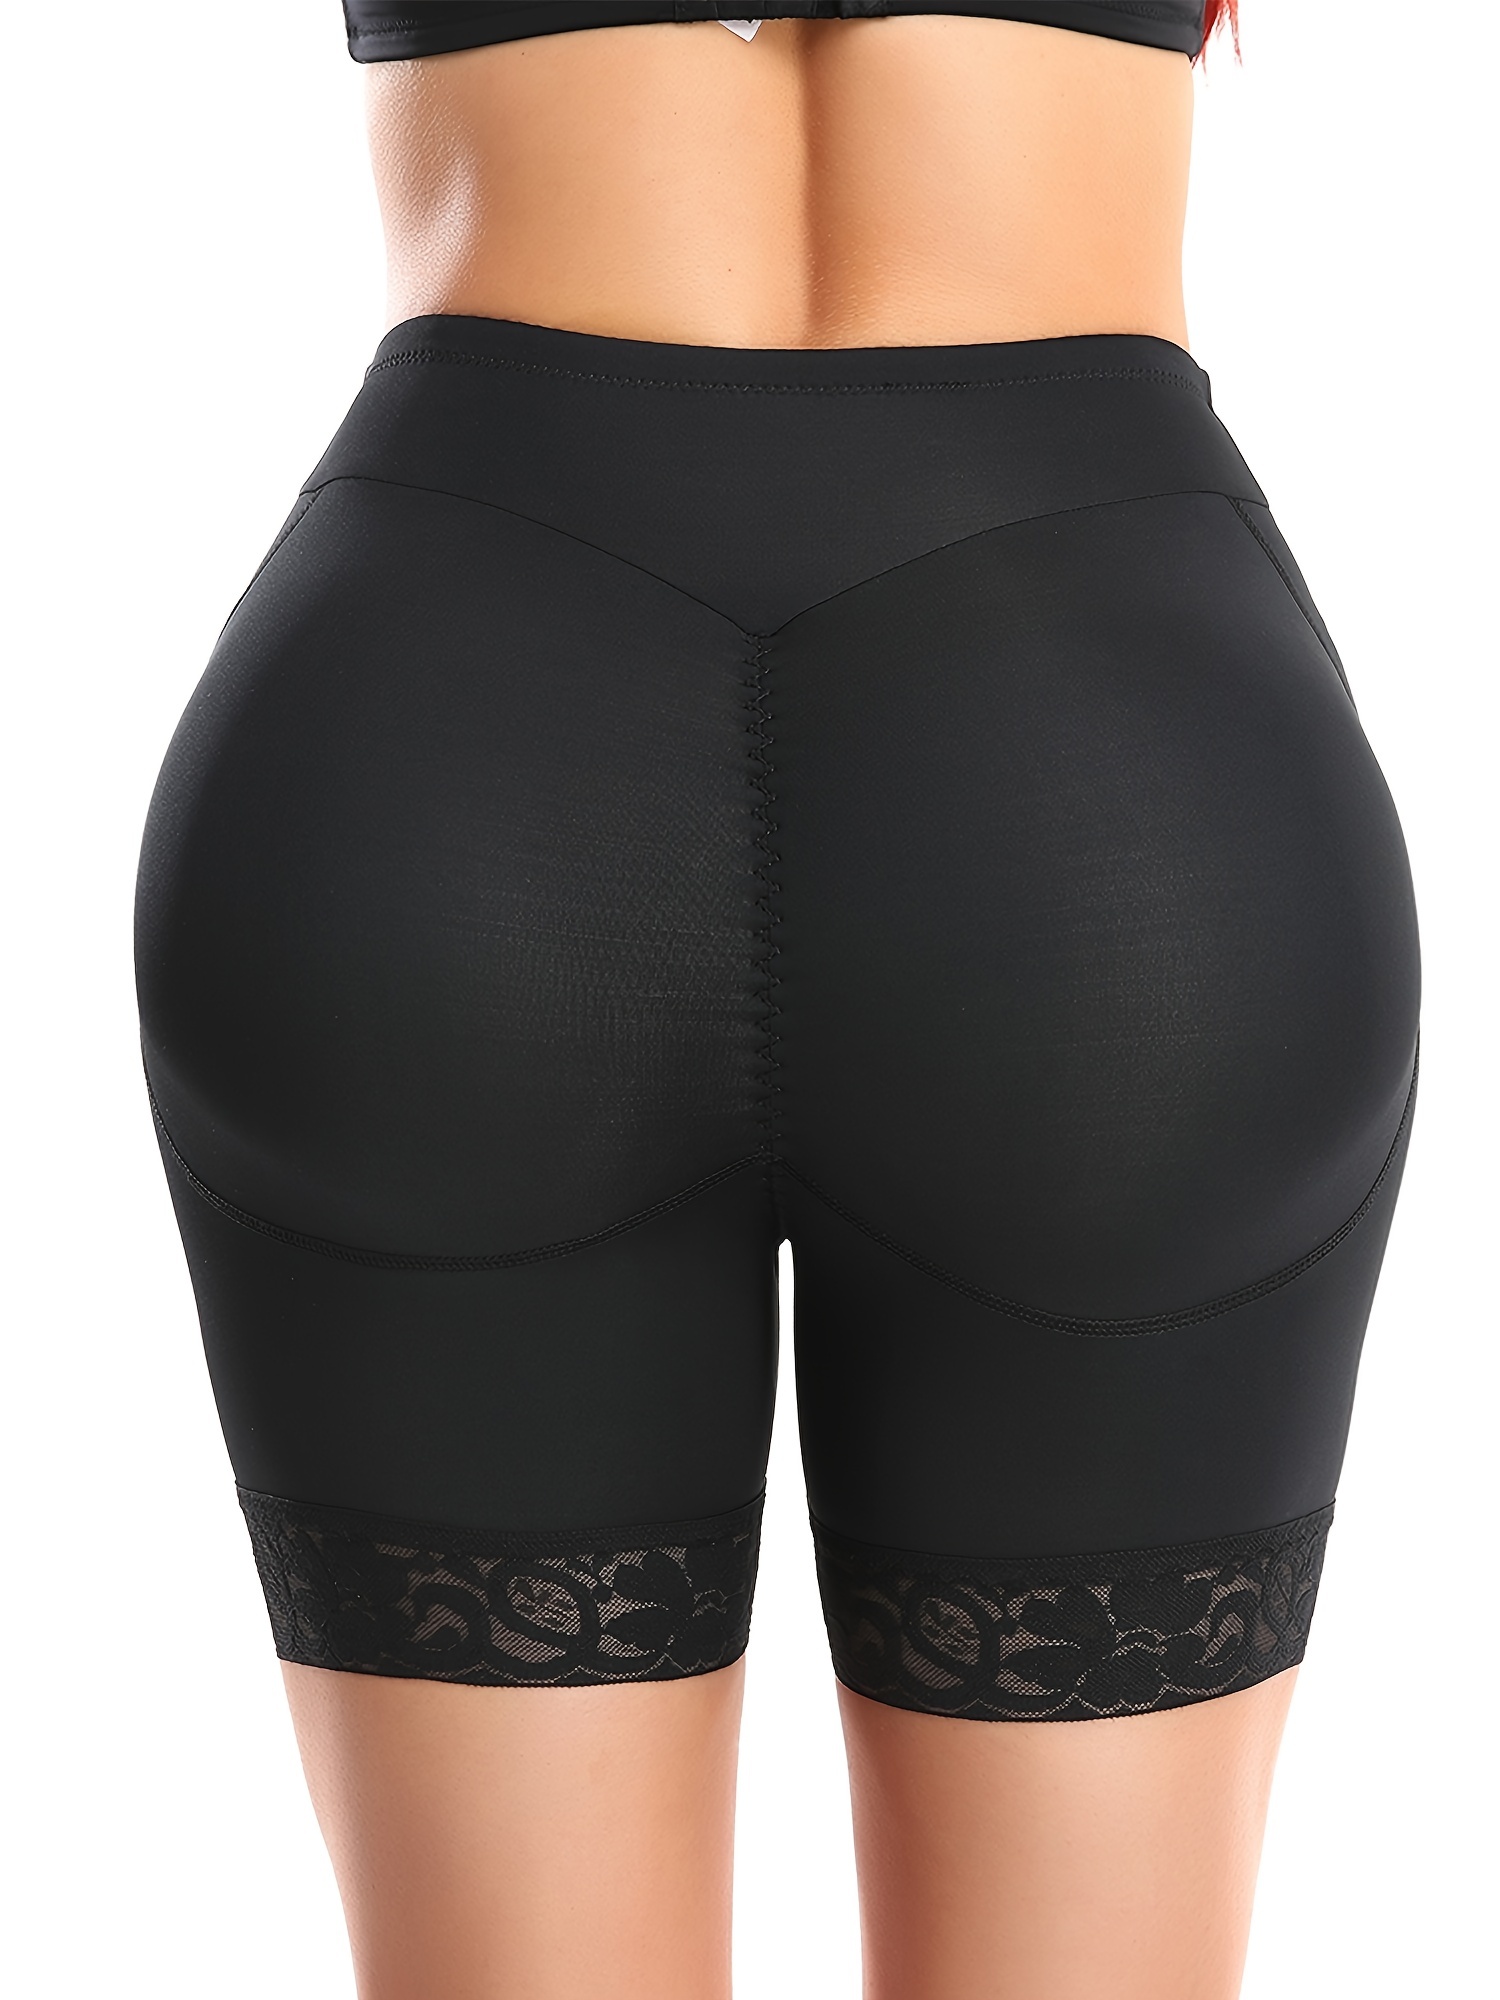 SLIMBELLE Butt Lifter Panties for Women Seamless Hip Enhancer Lace Shorts